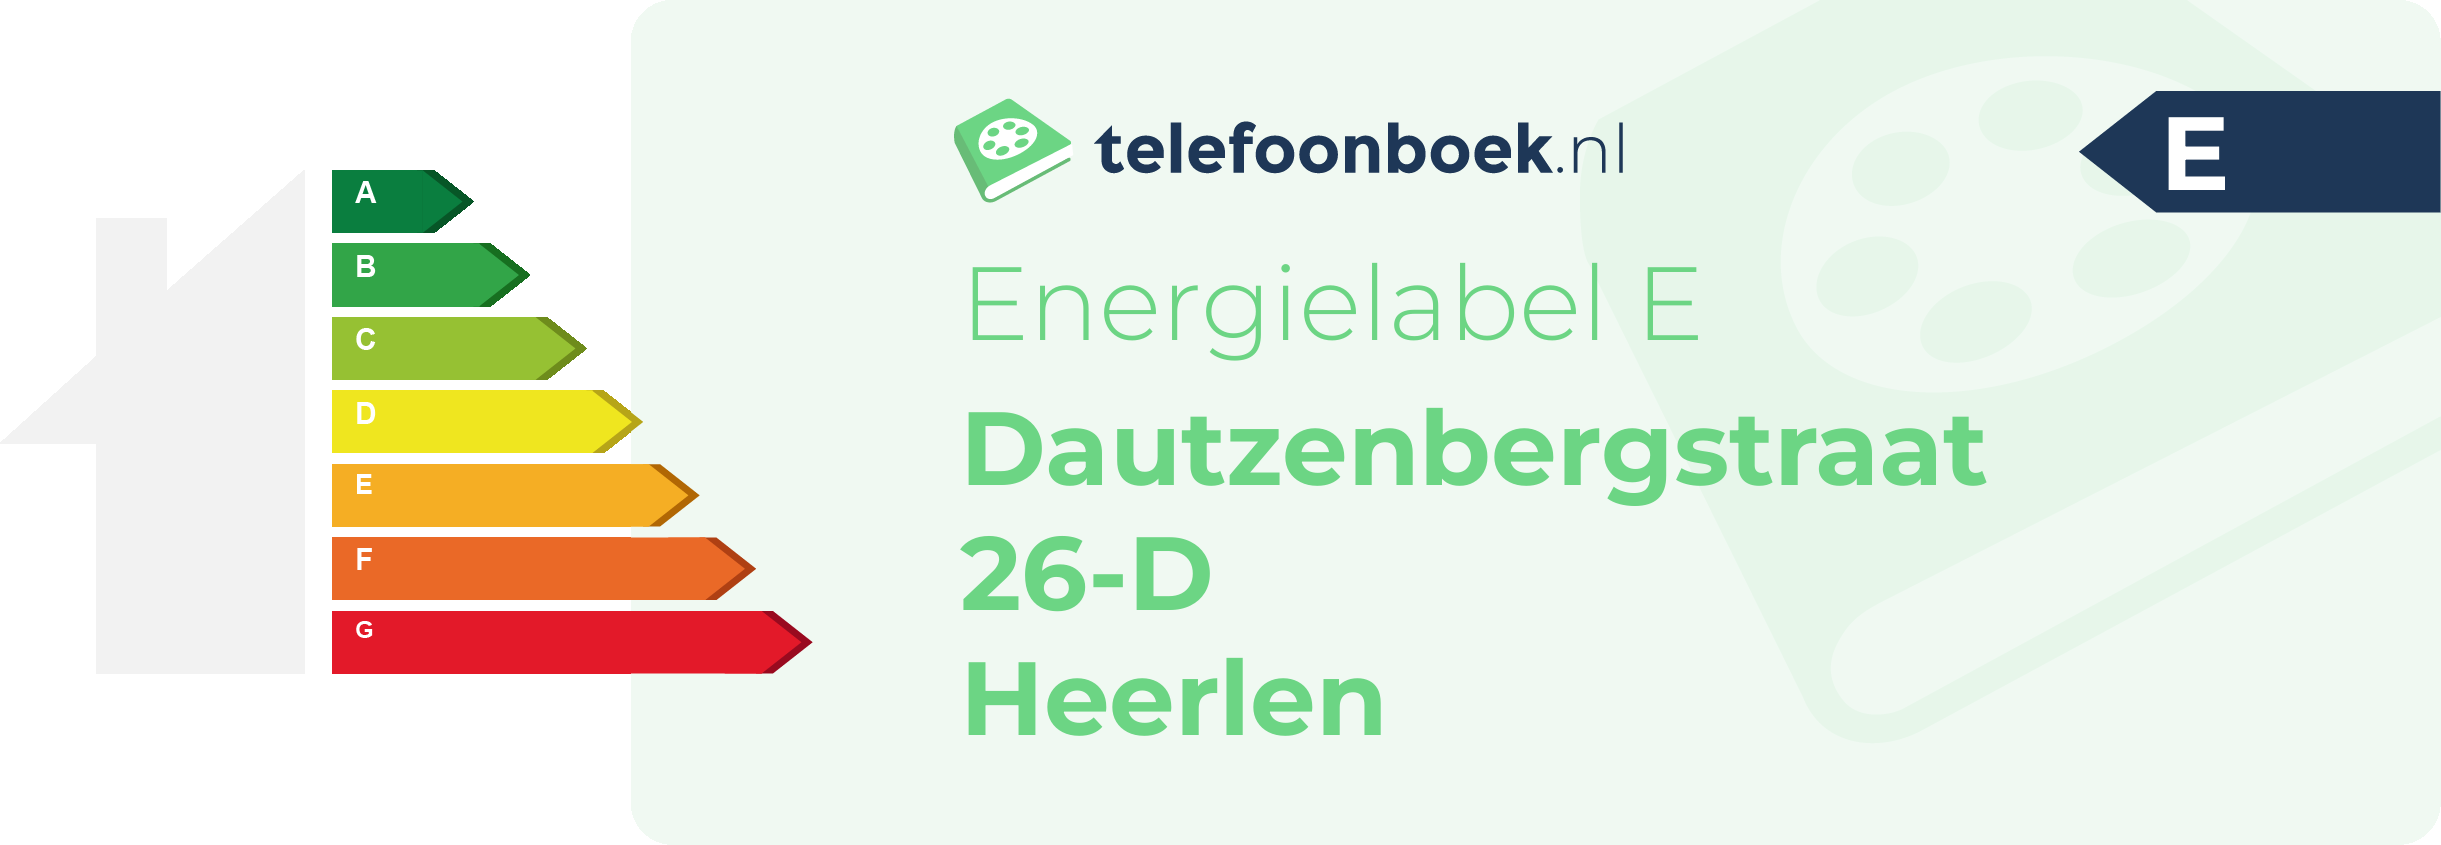 Energielabel Dautzenbergstraat 26-D Heerlen